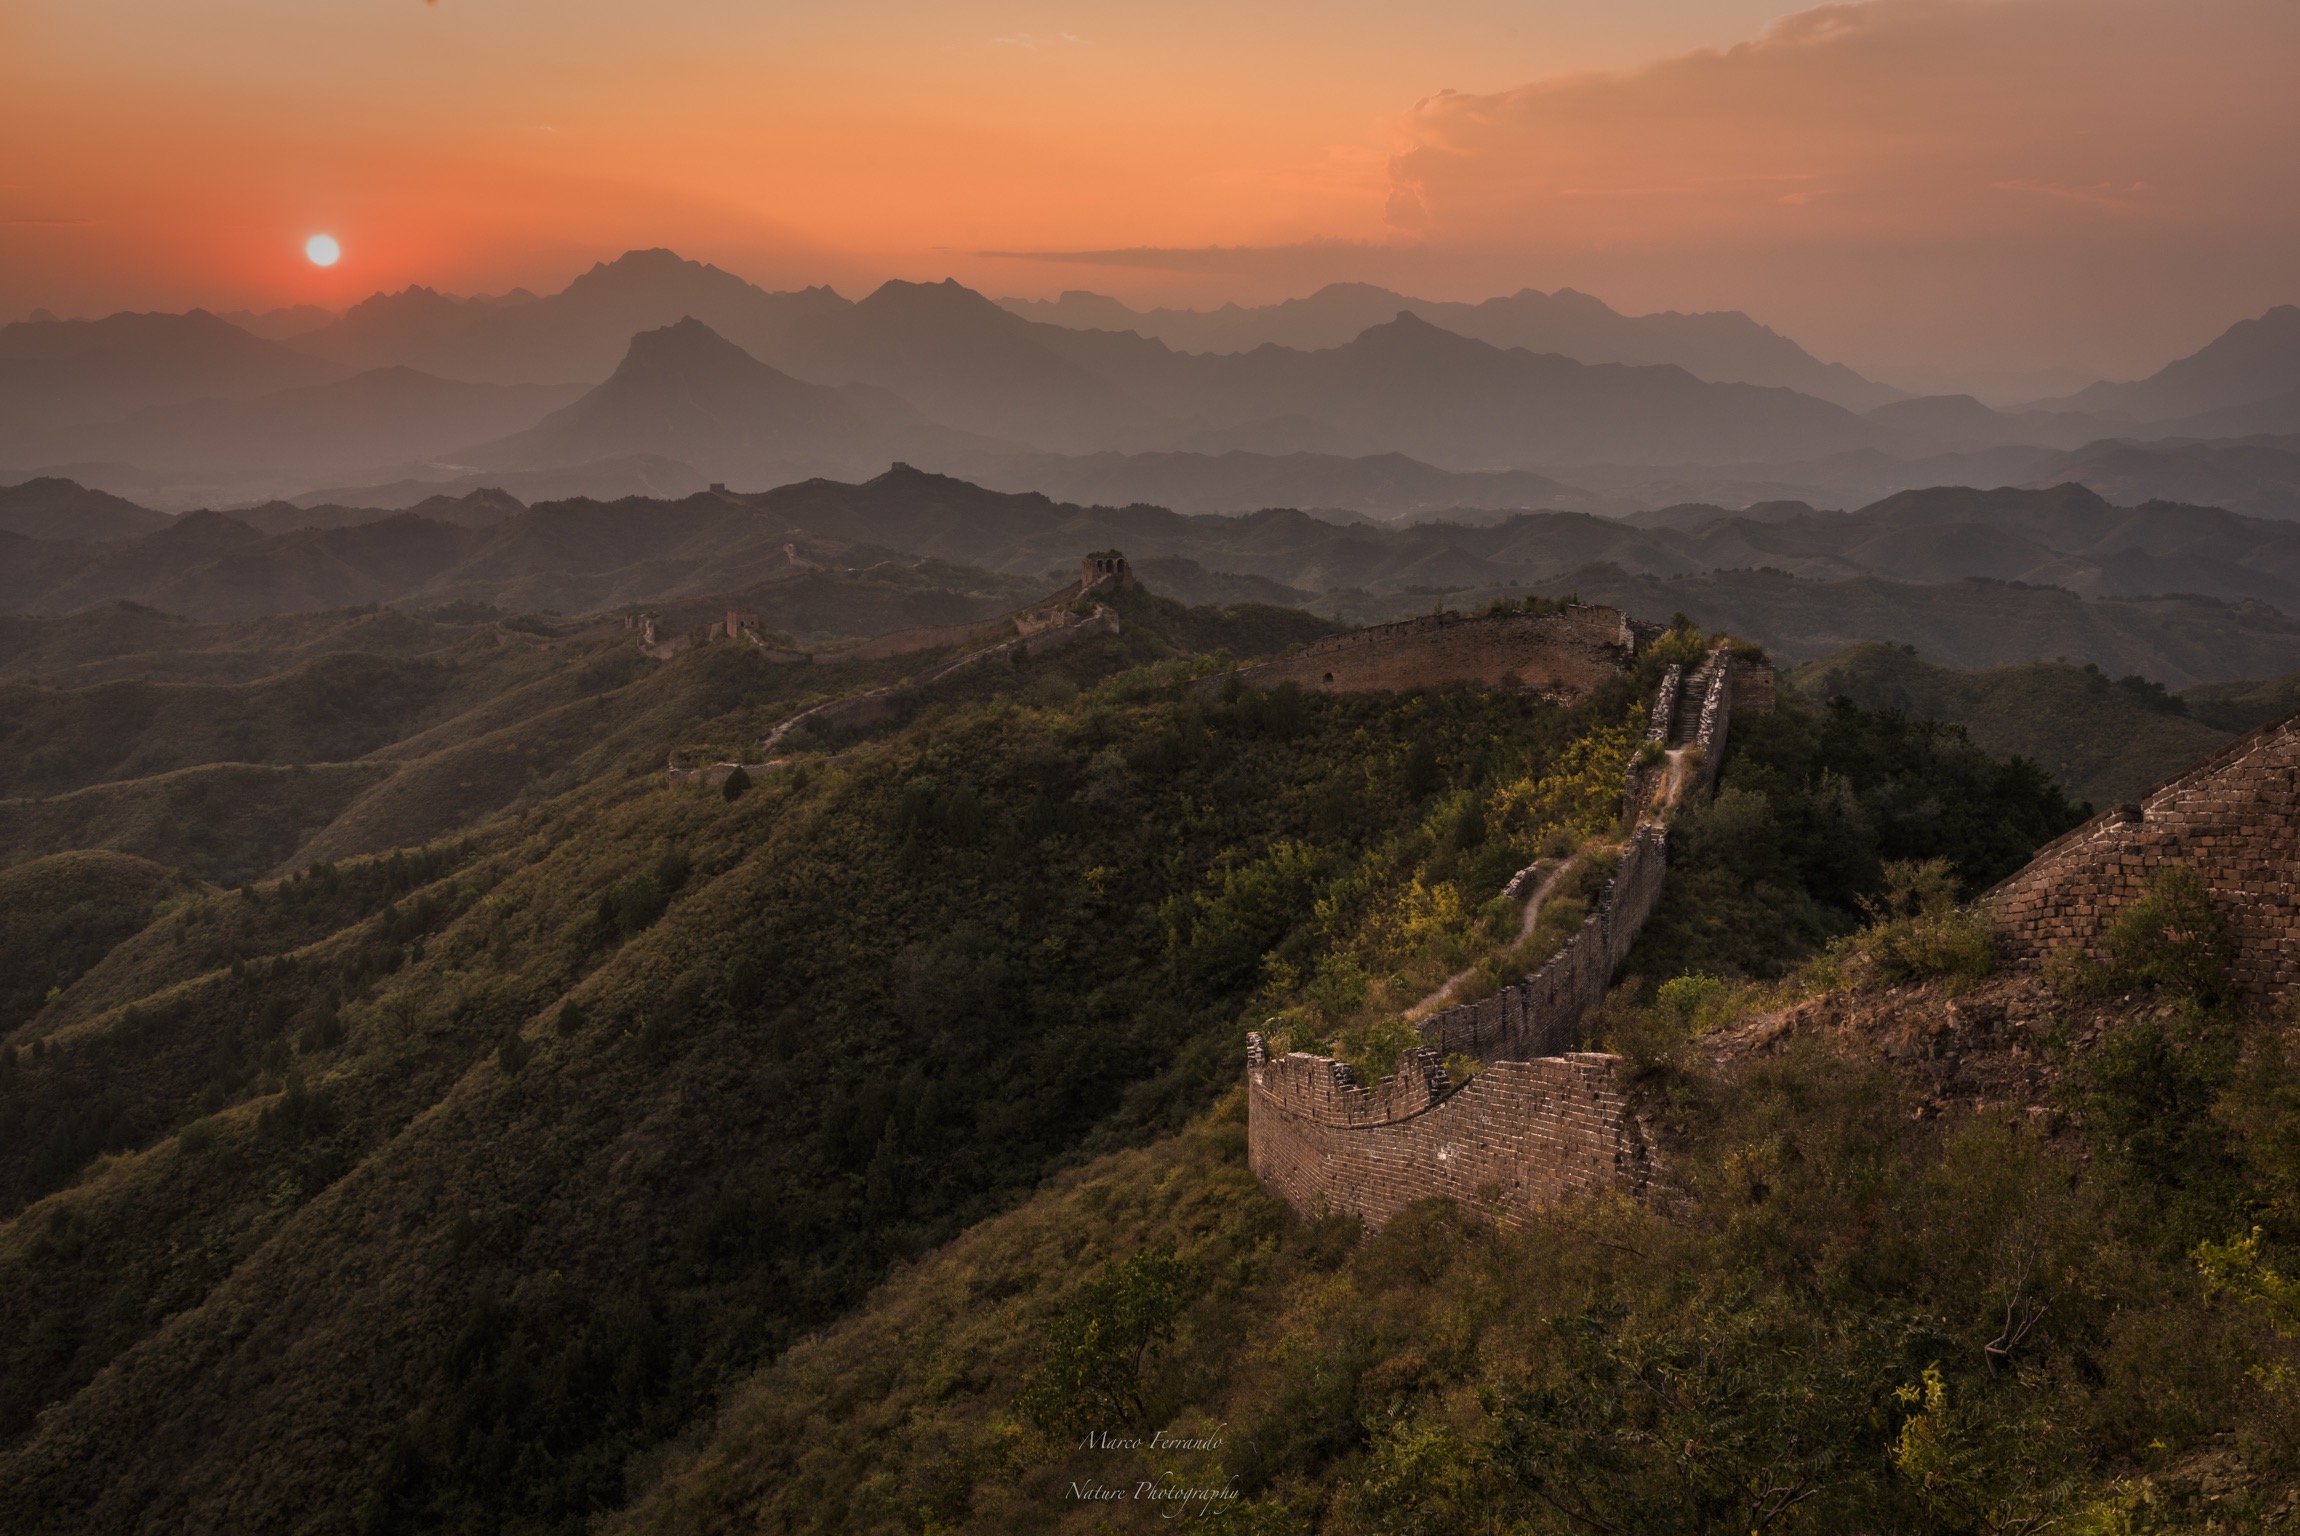 Ancient Wall of China...